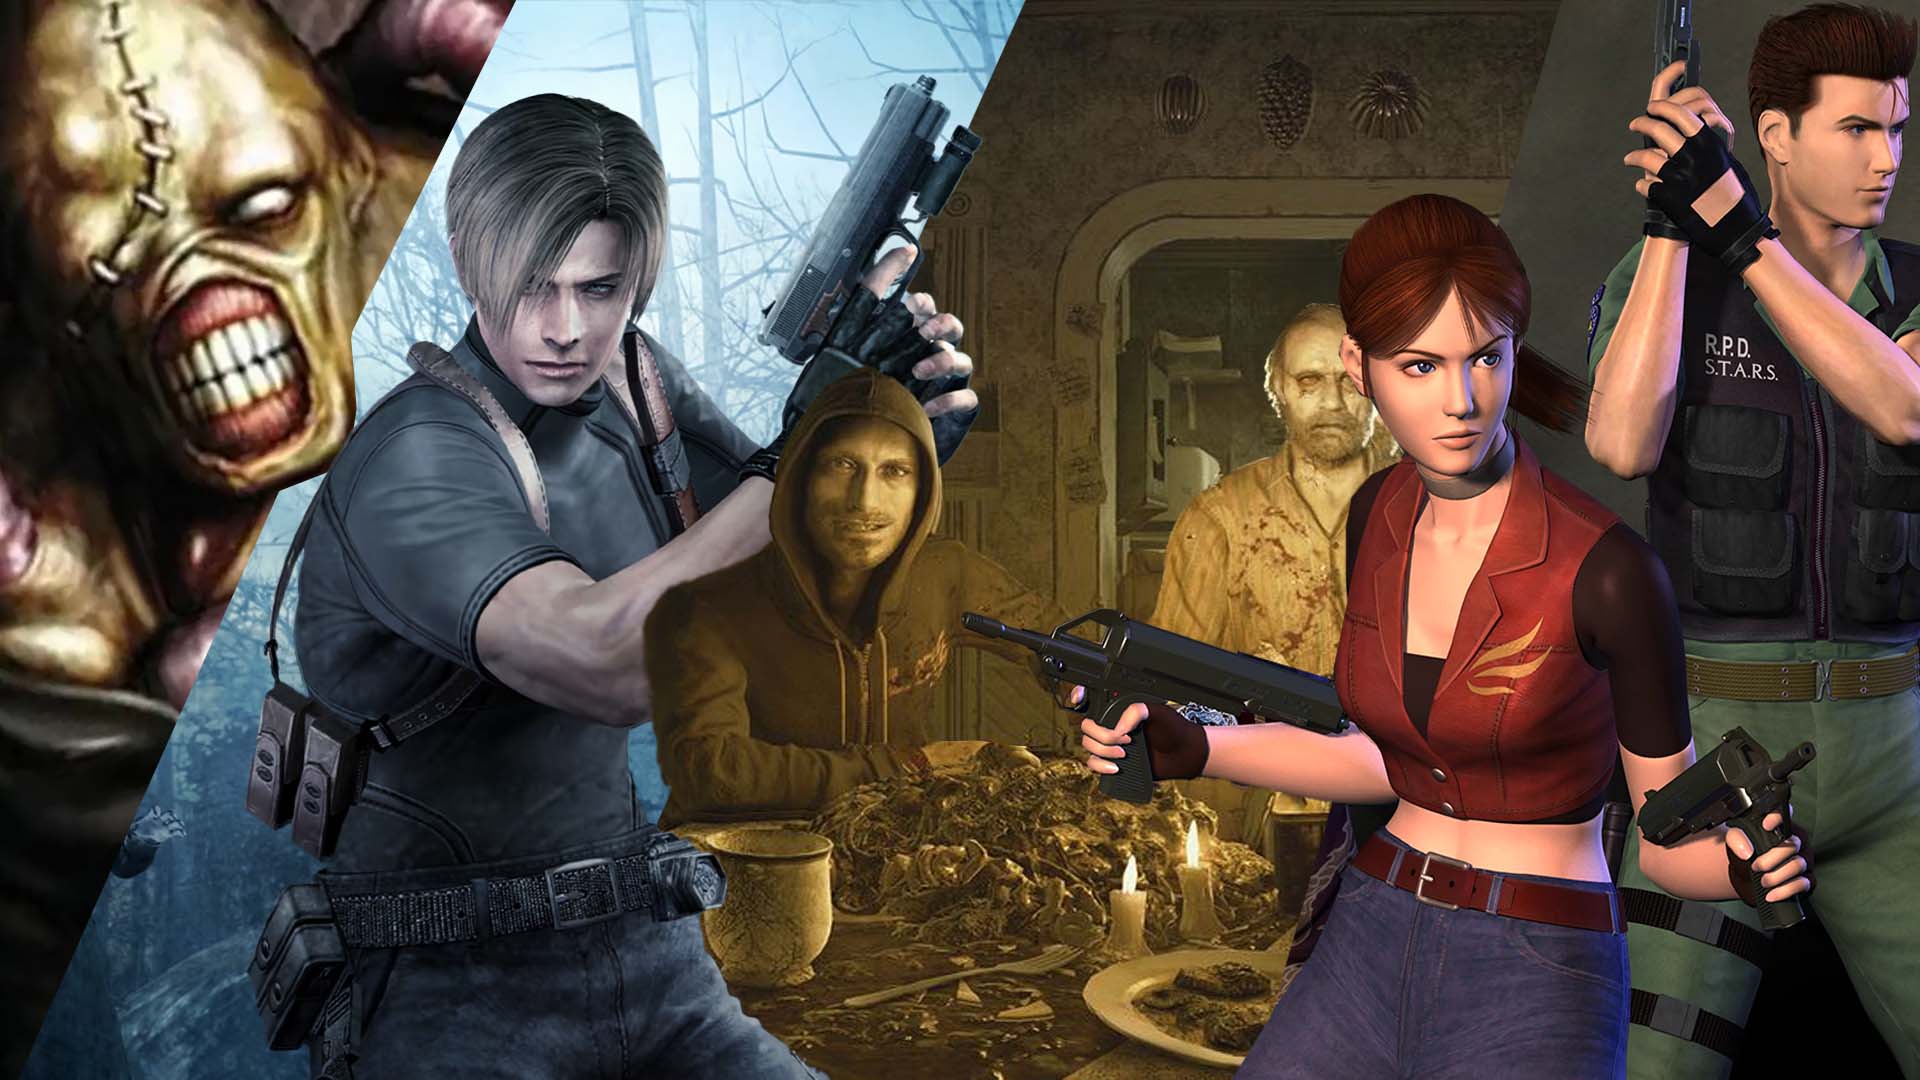 Rumor - Resident Evil 6 demo files reveal Ada Wong